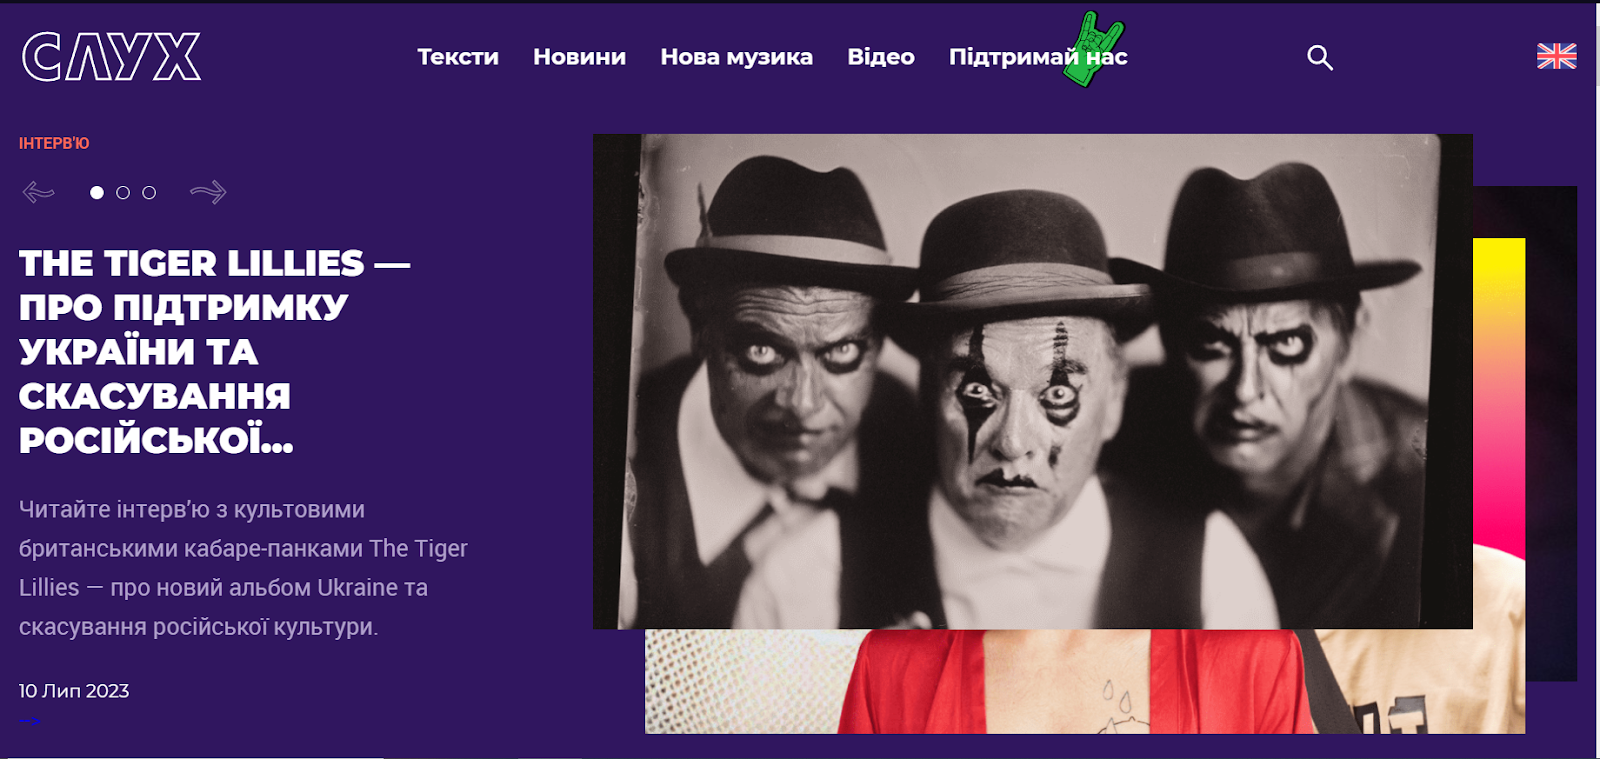 Slukh.media – про музику і мистецтво українською